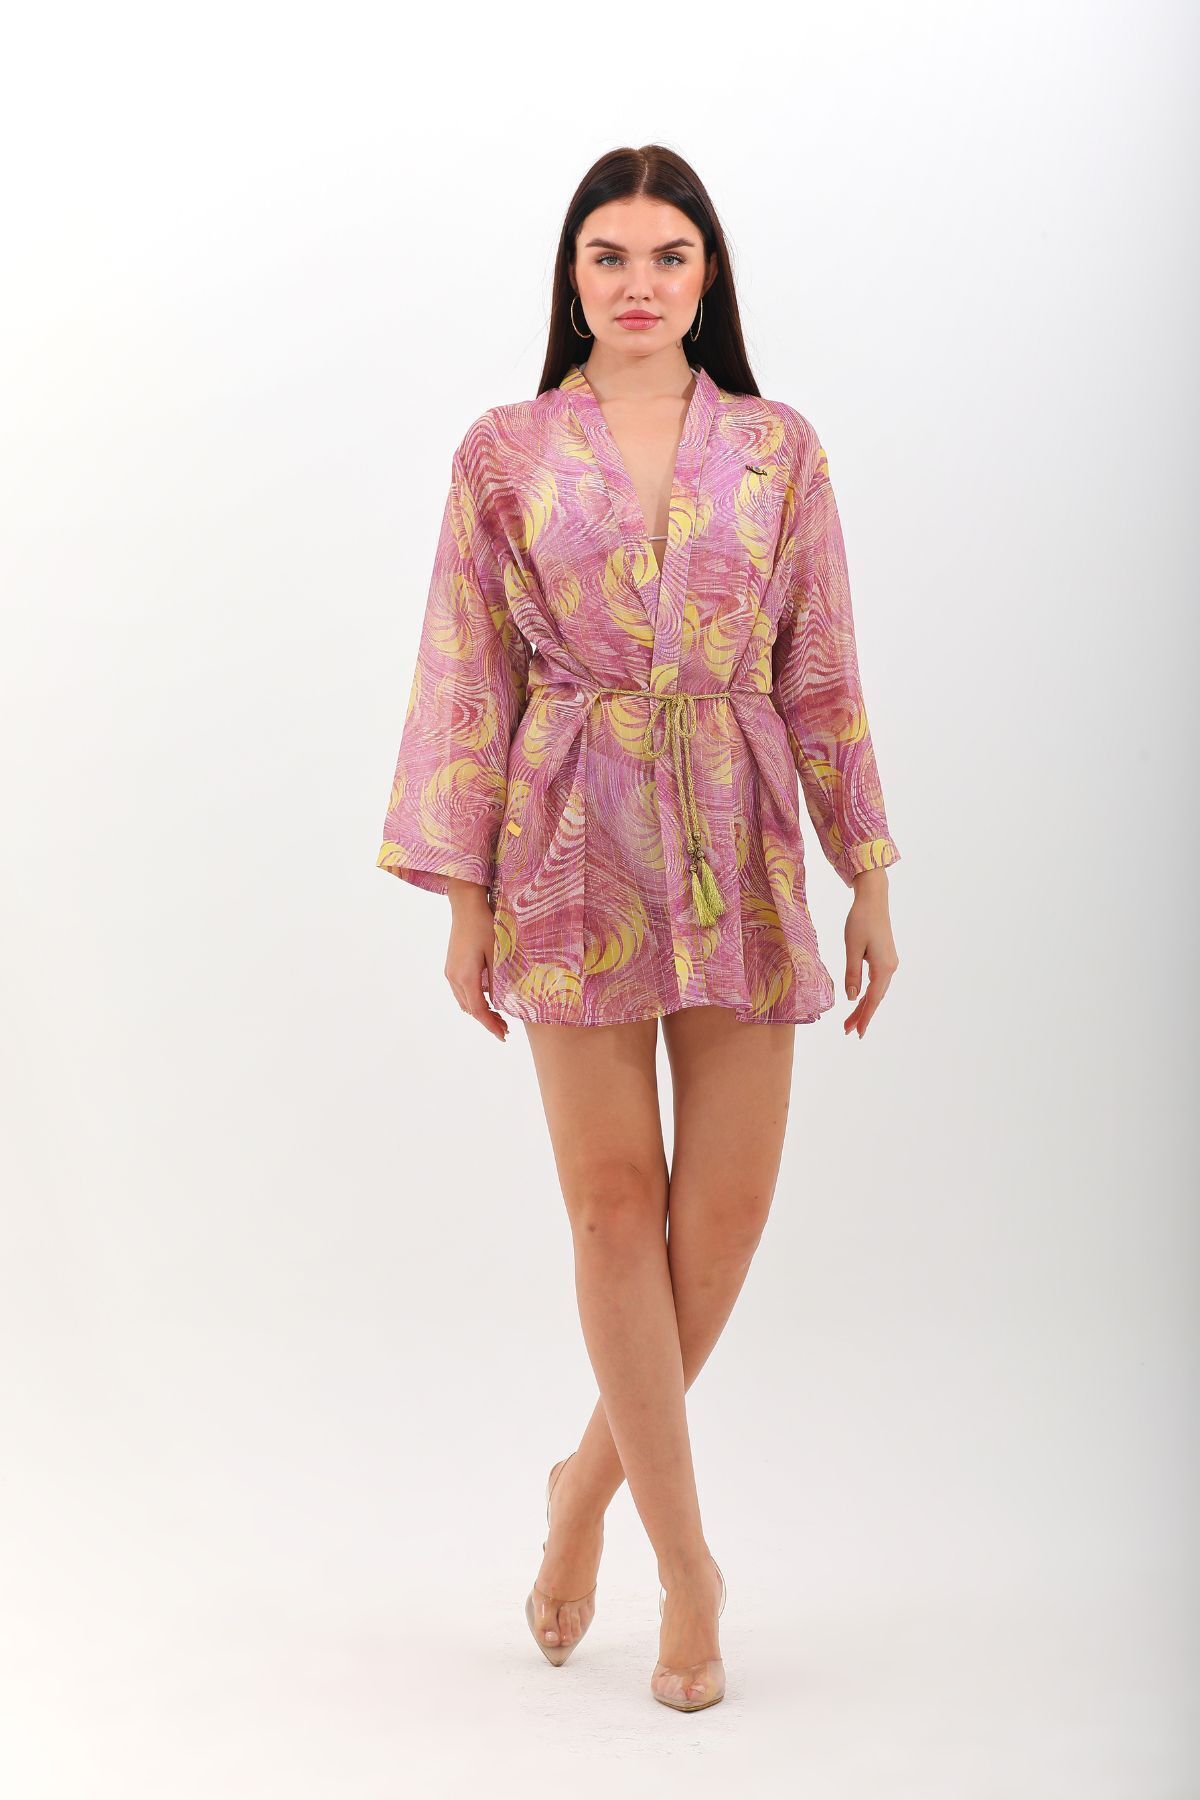 marecaldo Yazlık Kadın Giyim Modası Mayo Kimono Modeli Unicorno Desen